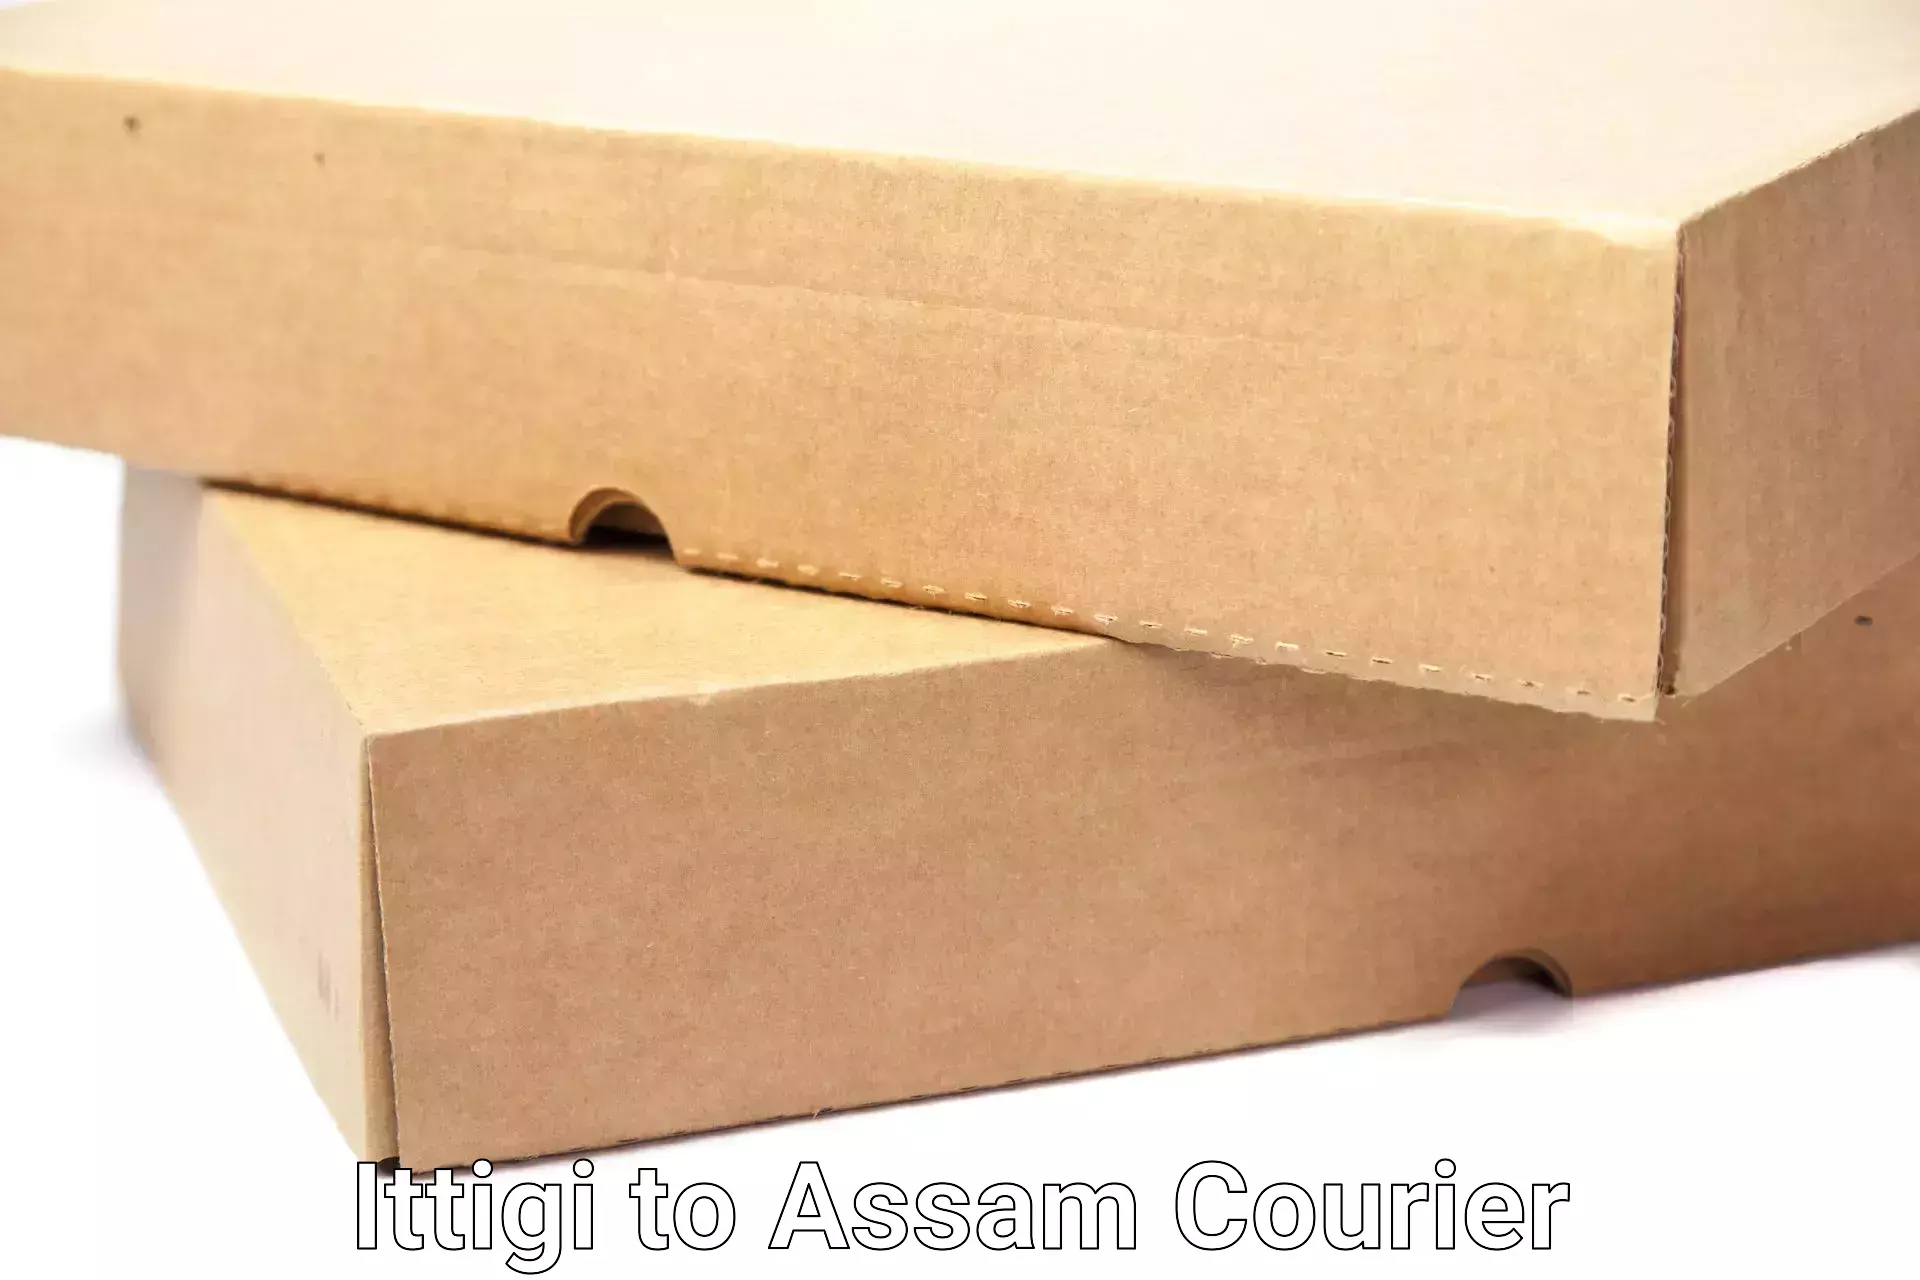 Household moving assistance Ittigi to Lala Assam